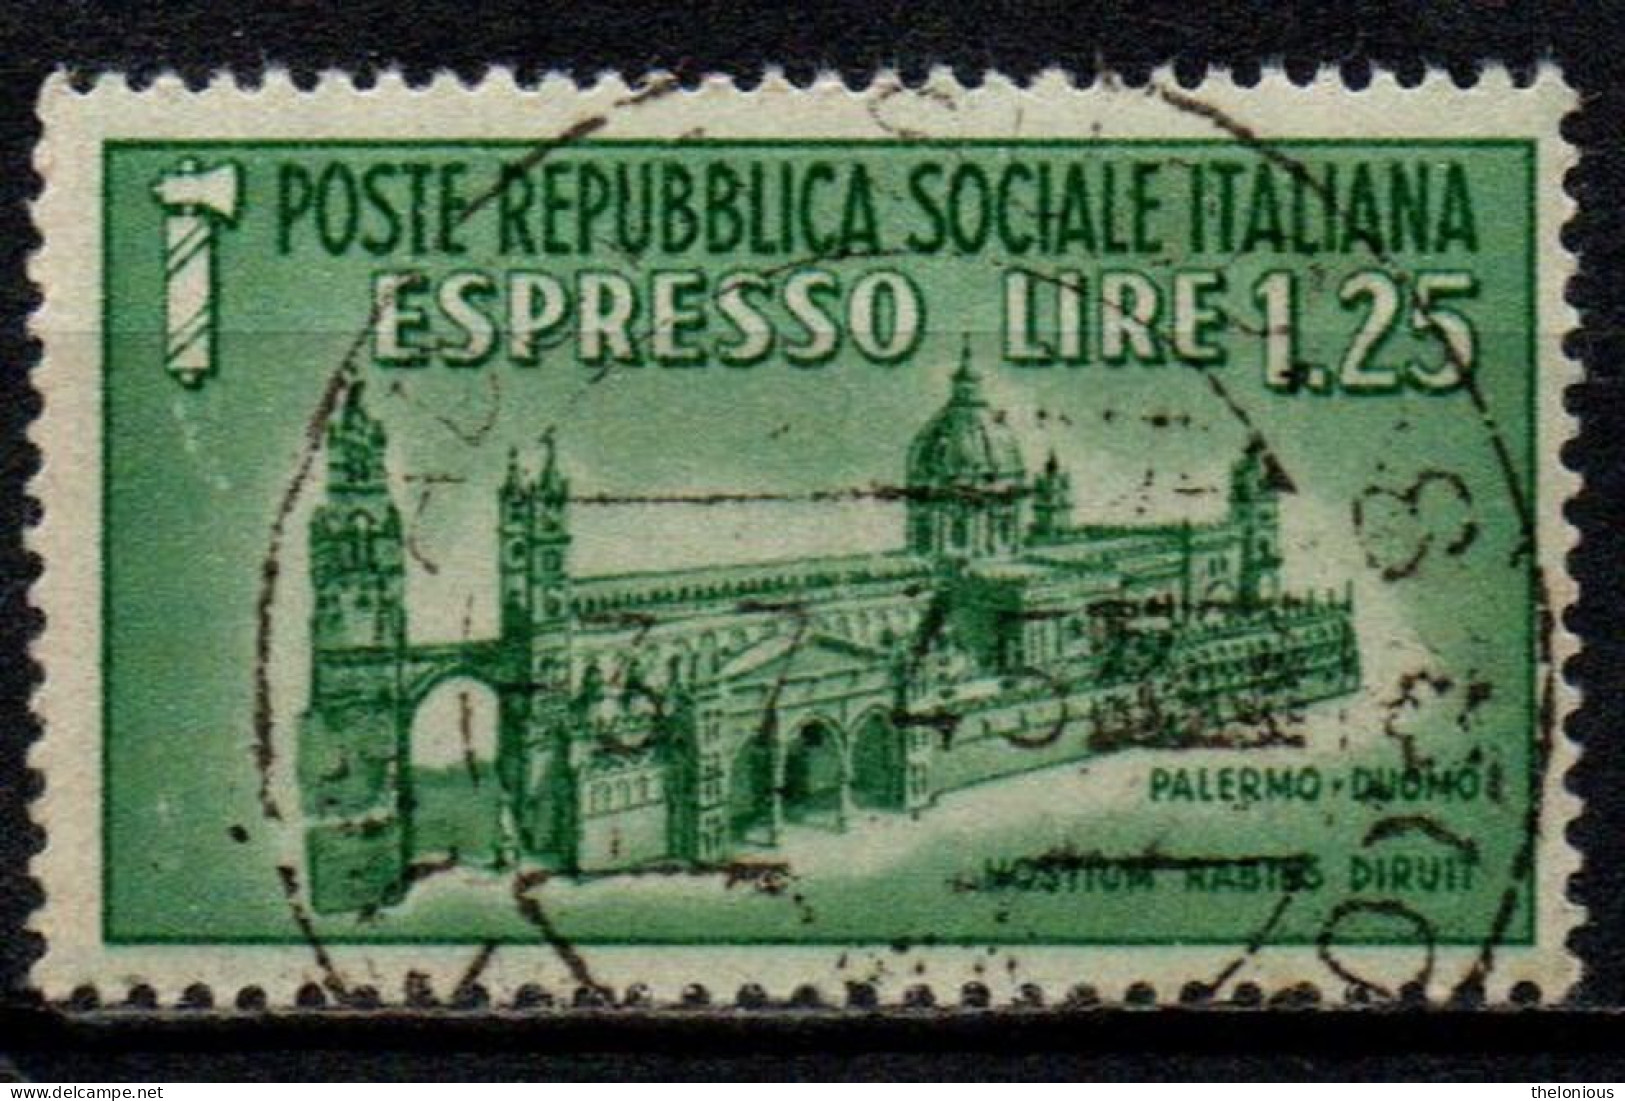 1944 Repubblica Sociale: Monumenti Distrutti - Espresso Lire 1,25 Usato - Eilsendung (Eilpost)